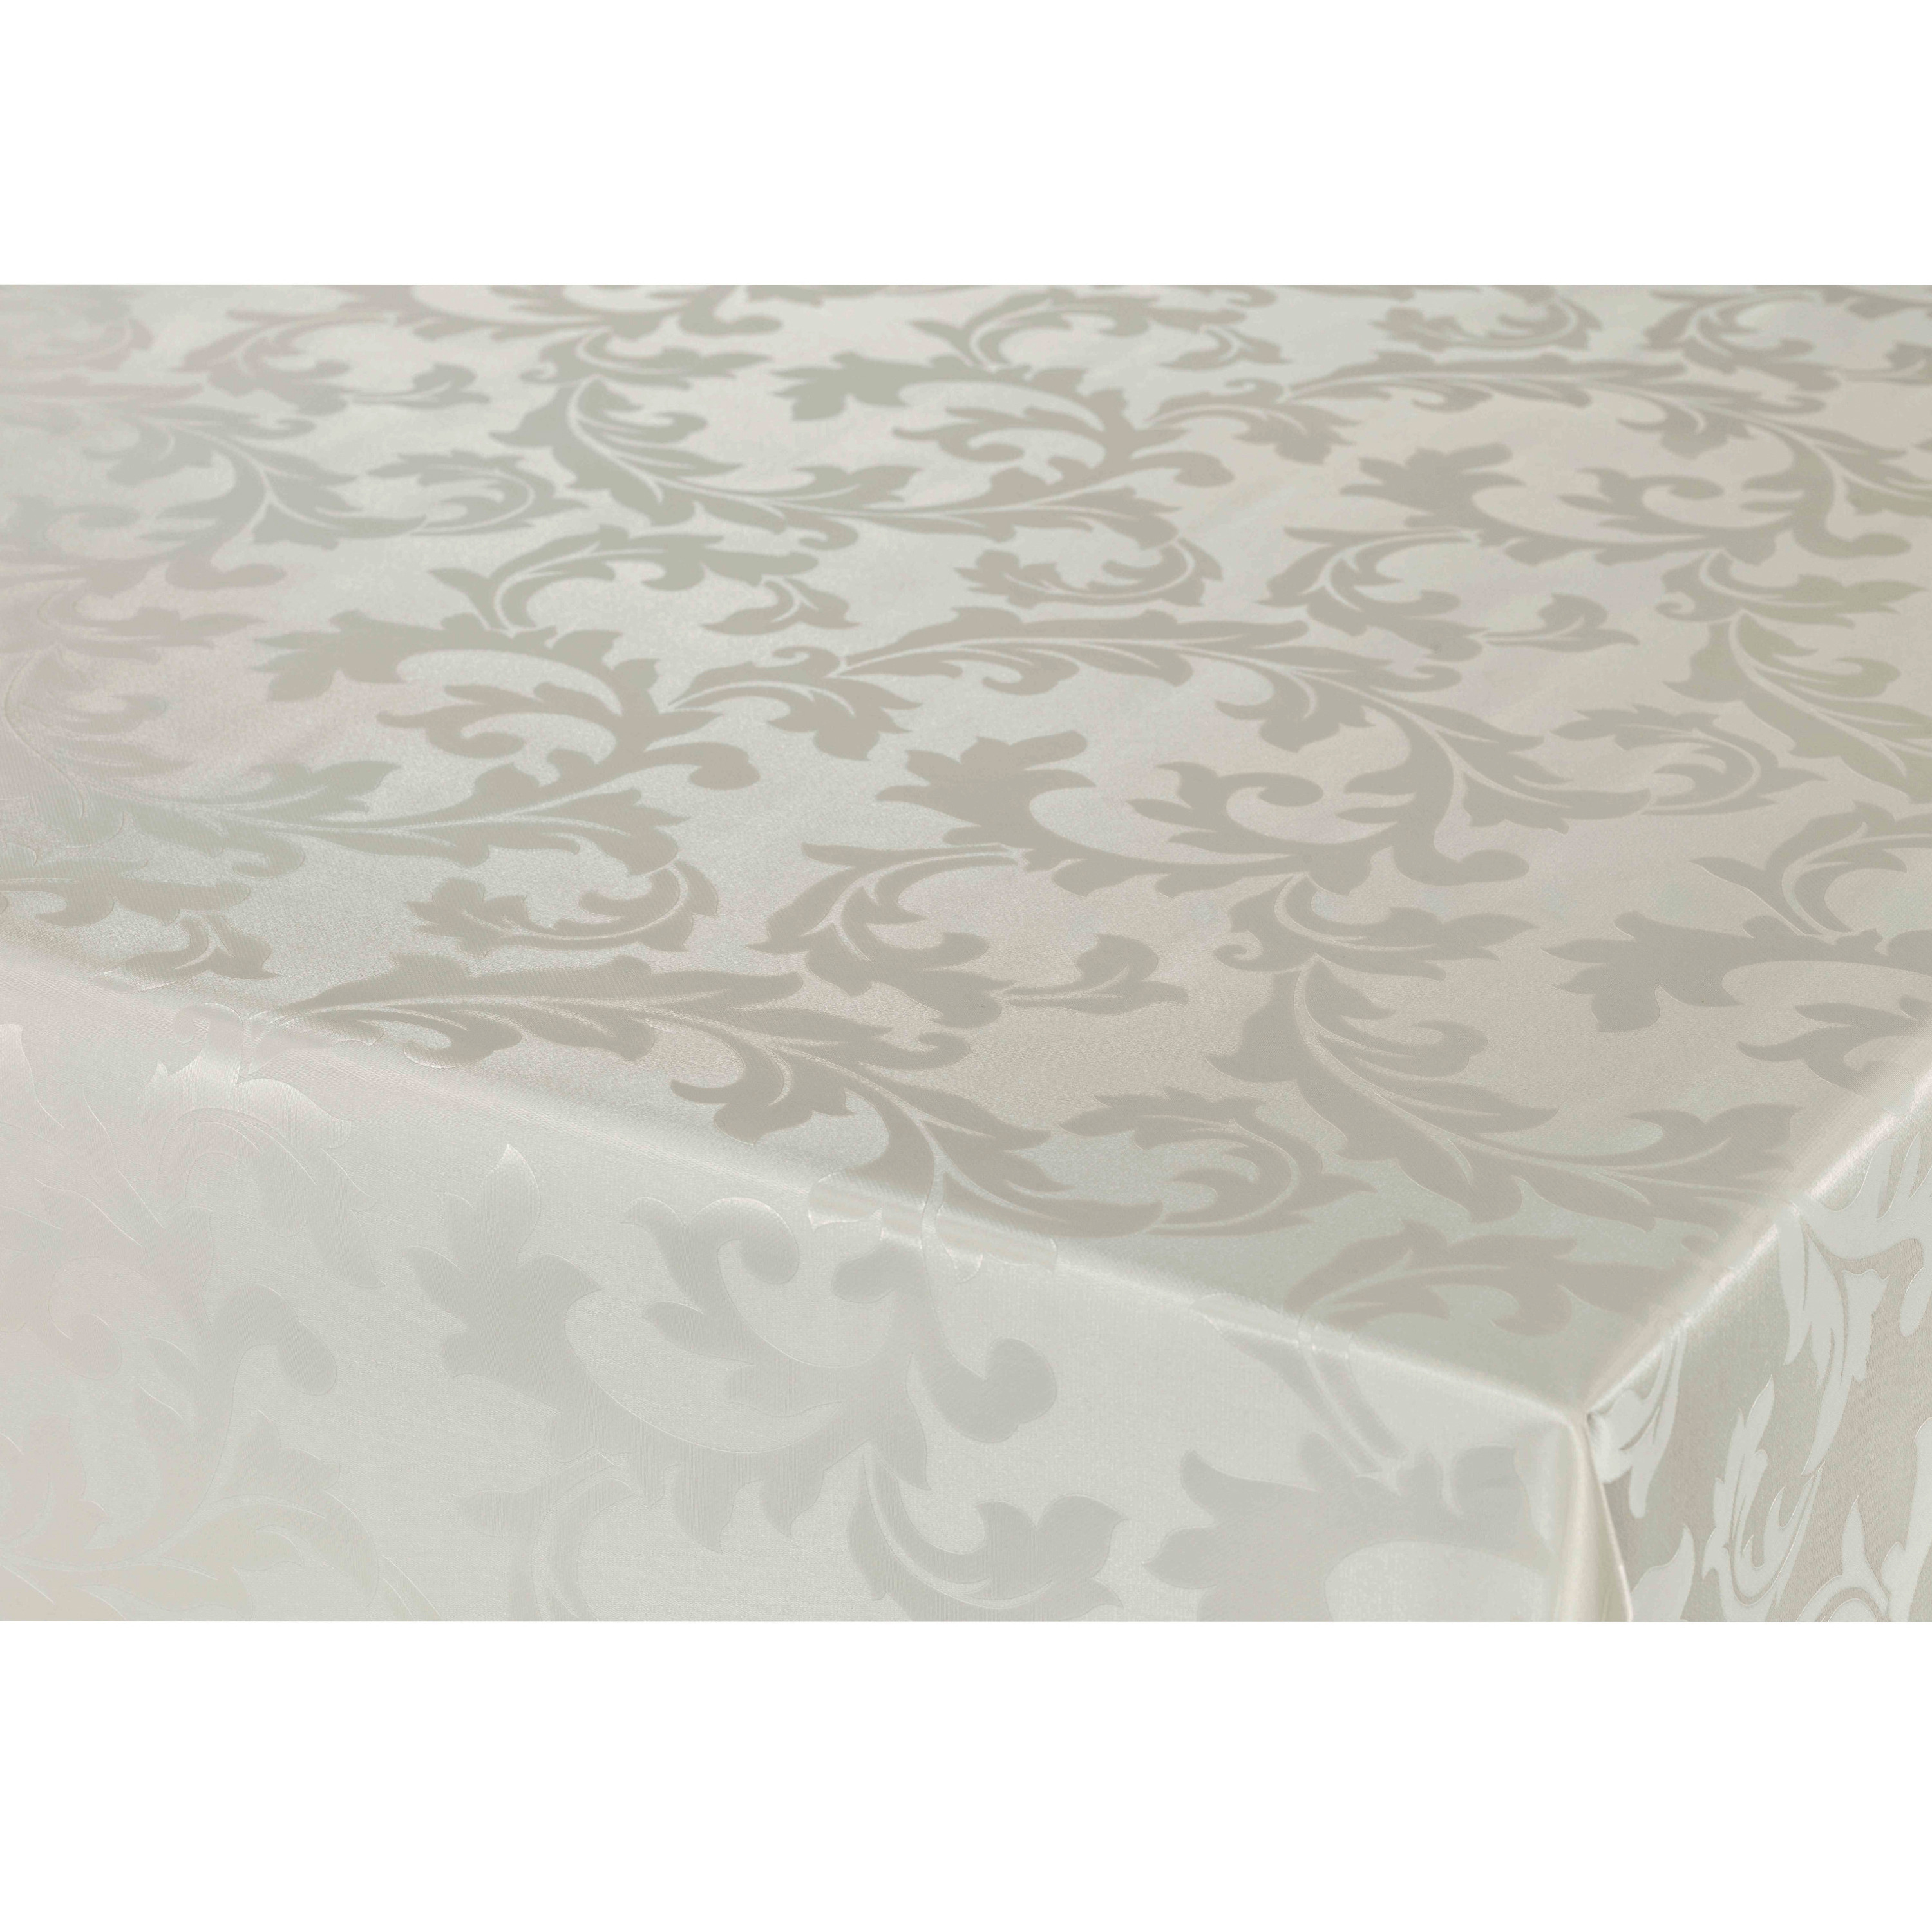 Bellatio Design Tafelzeil/tafelkleed Damast licht beige barok krullen print x 300 cm -